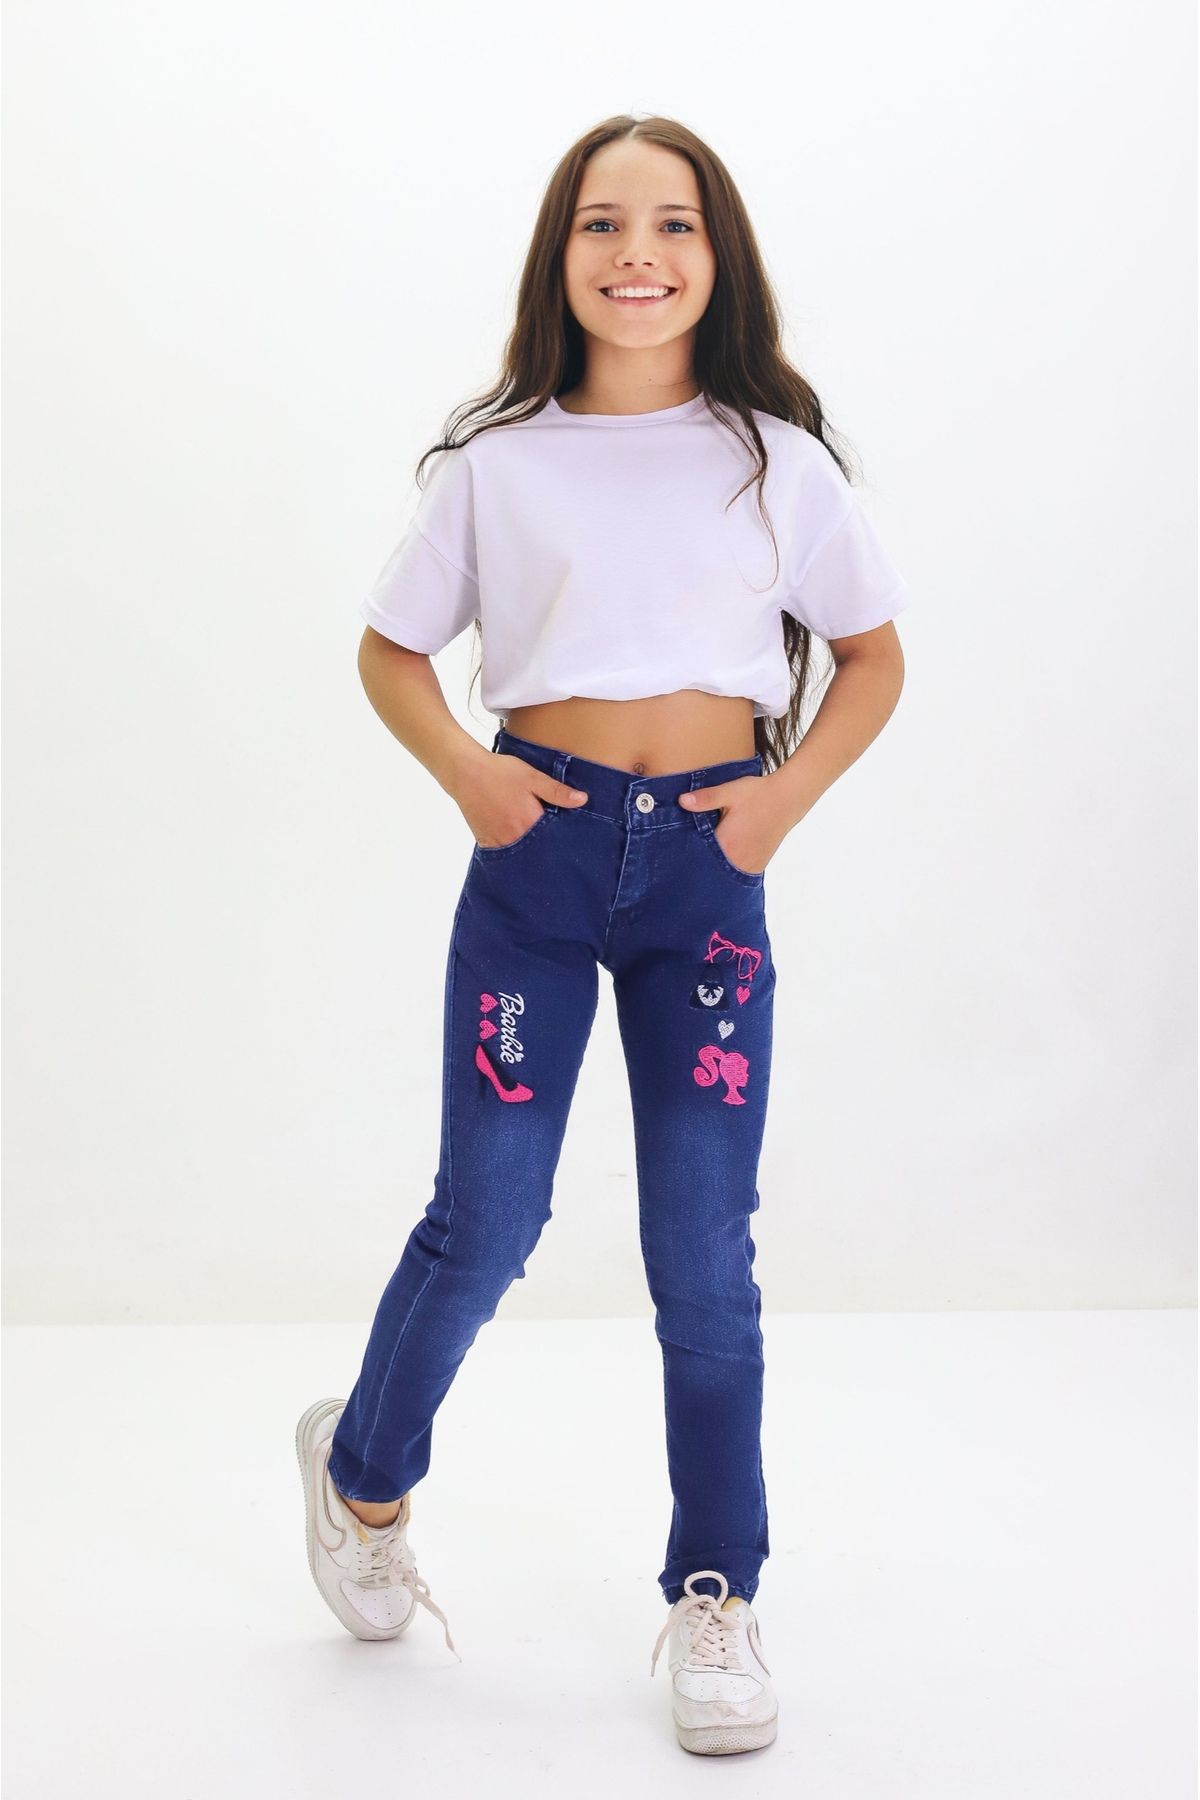 GZT TEKSTİL Kız Çocuk Likralı Pamuklu Kot Jeans Pantolon Nakış İşlemeli 6-12 Yaş